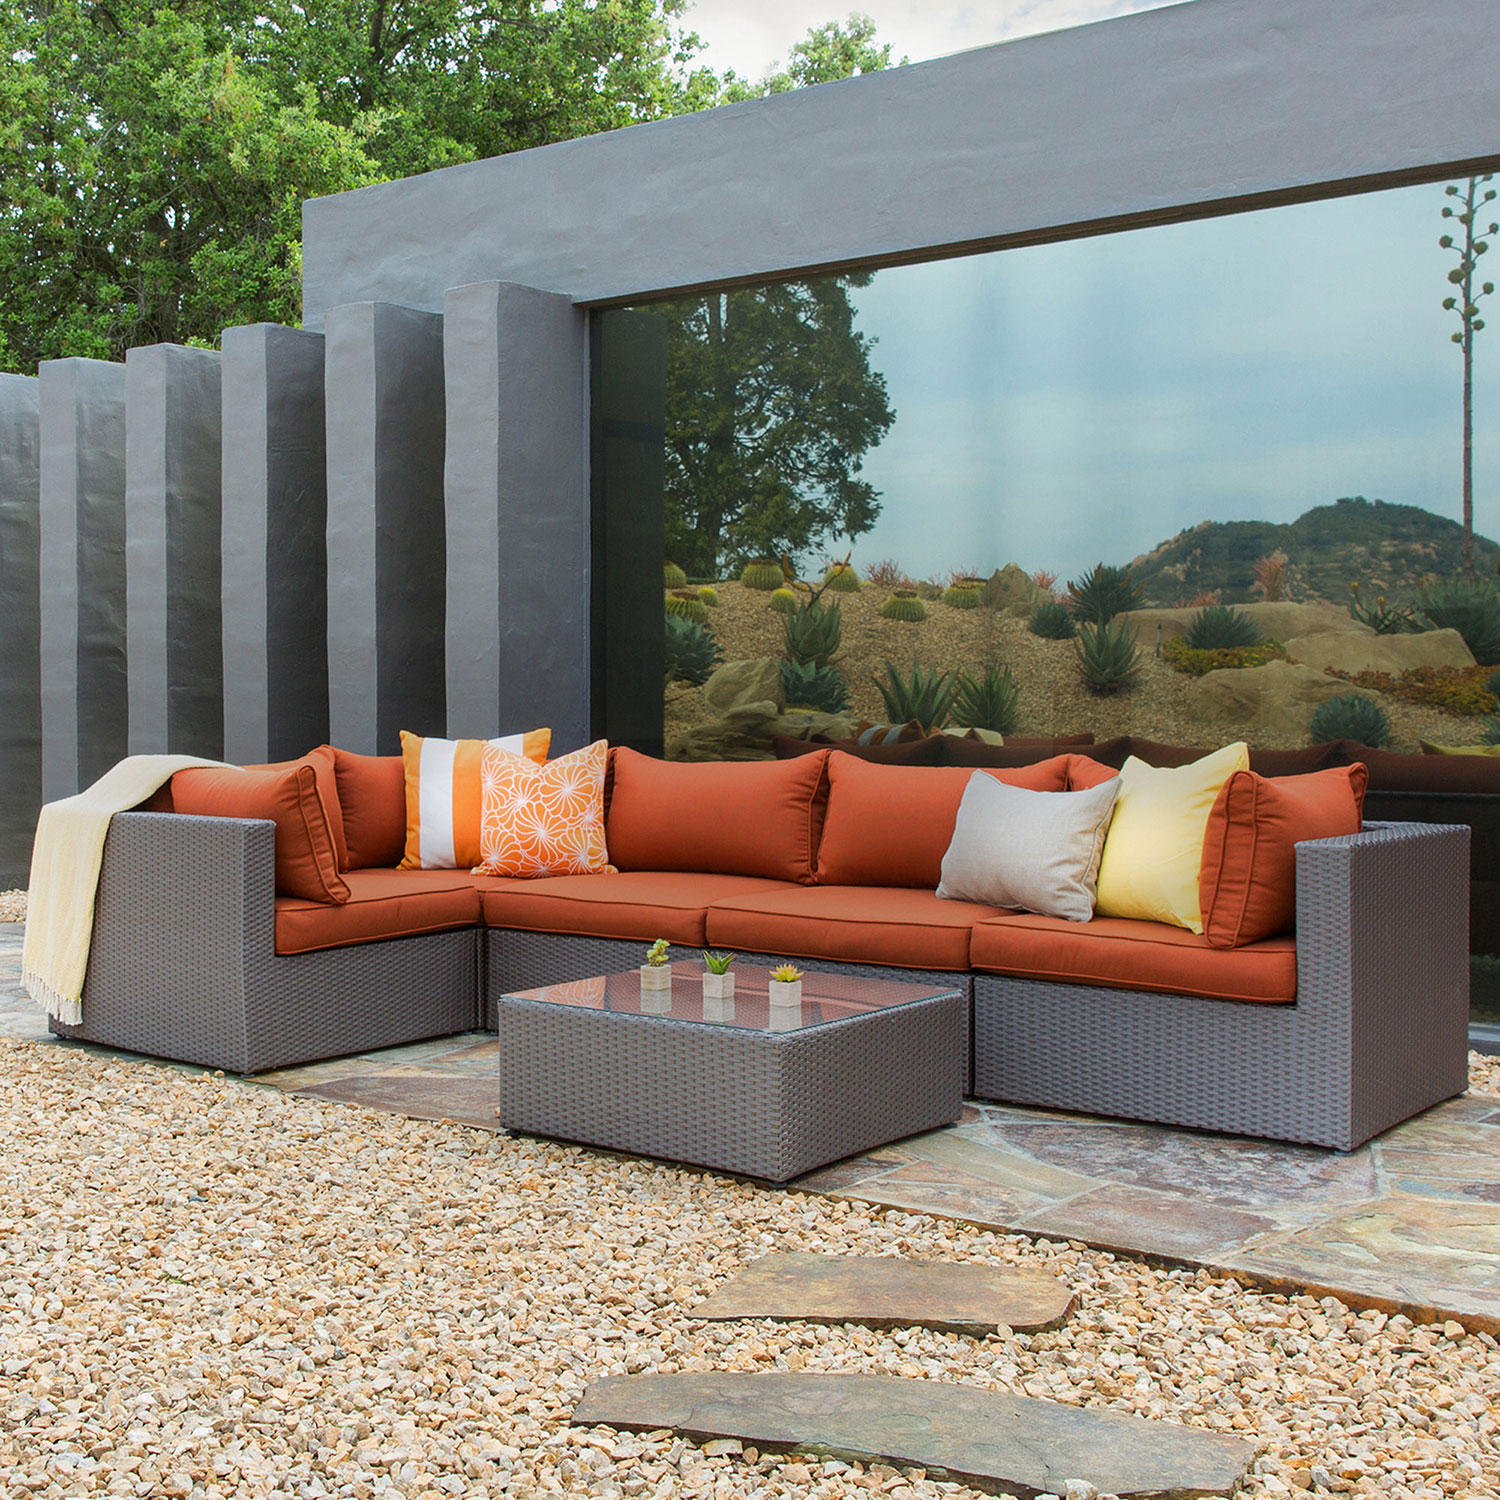 Royal Garden Concord 6-Piece Outdoor Sectional Sofa Seating Set